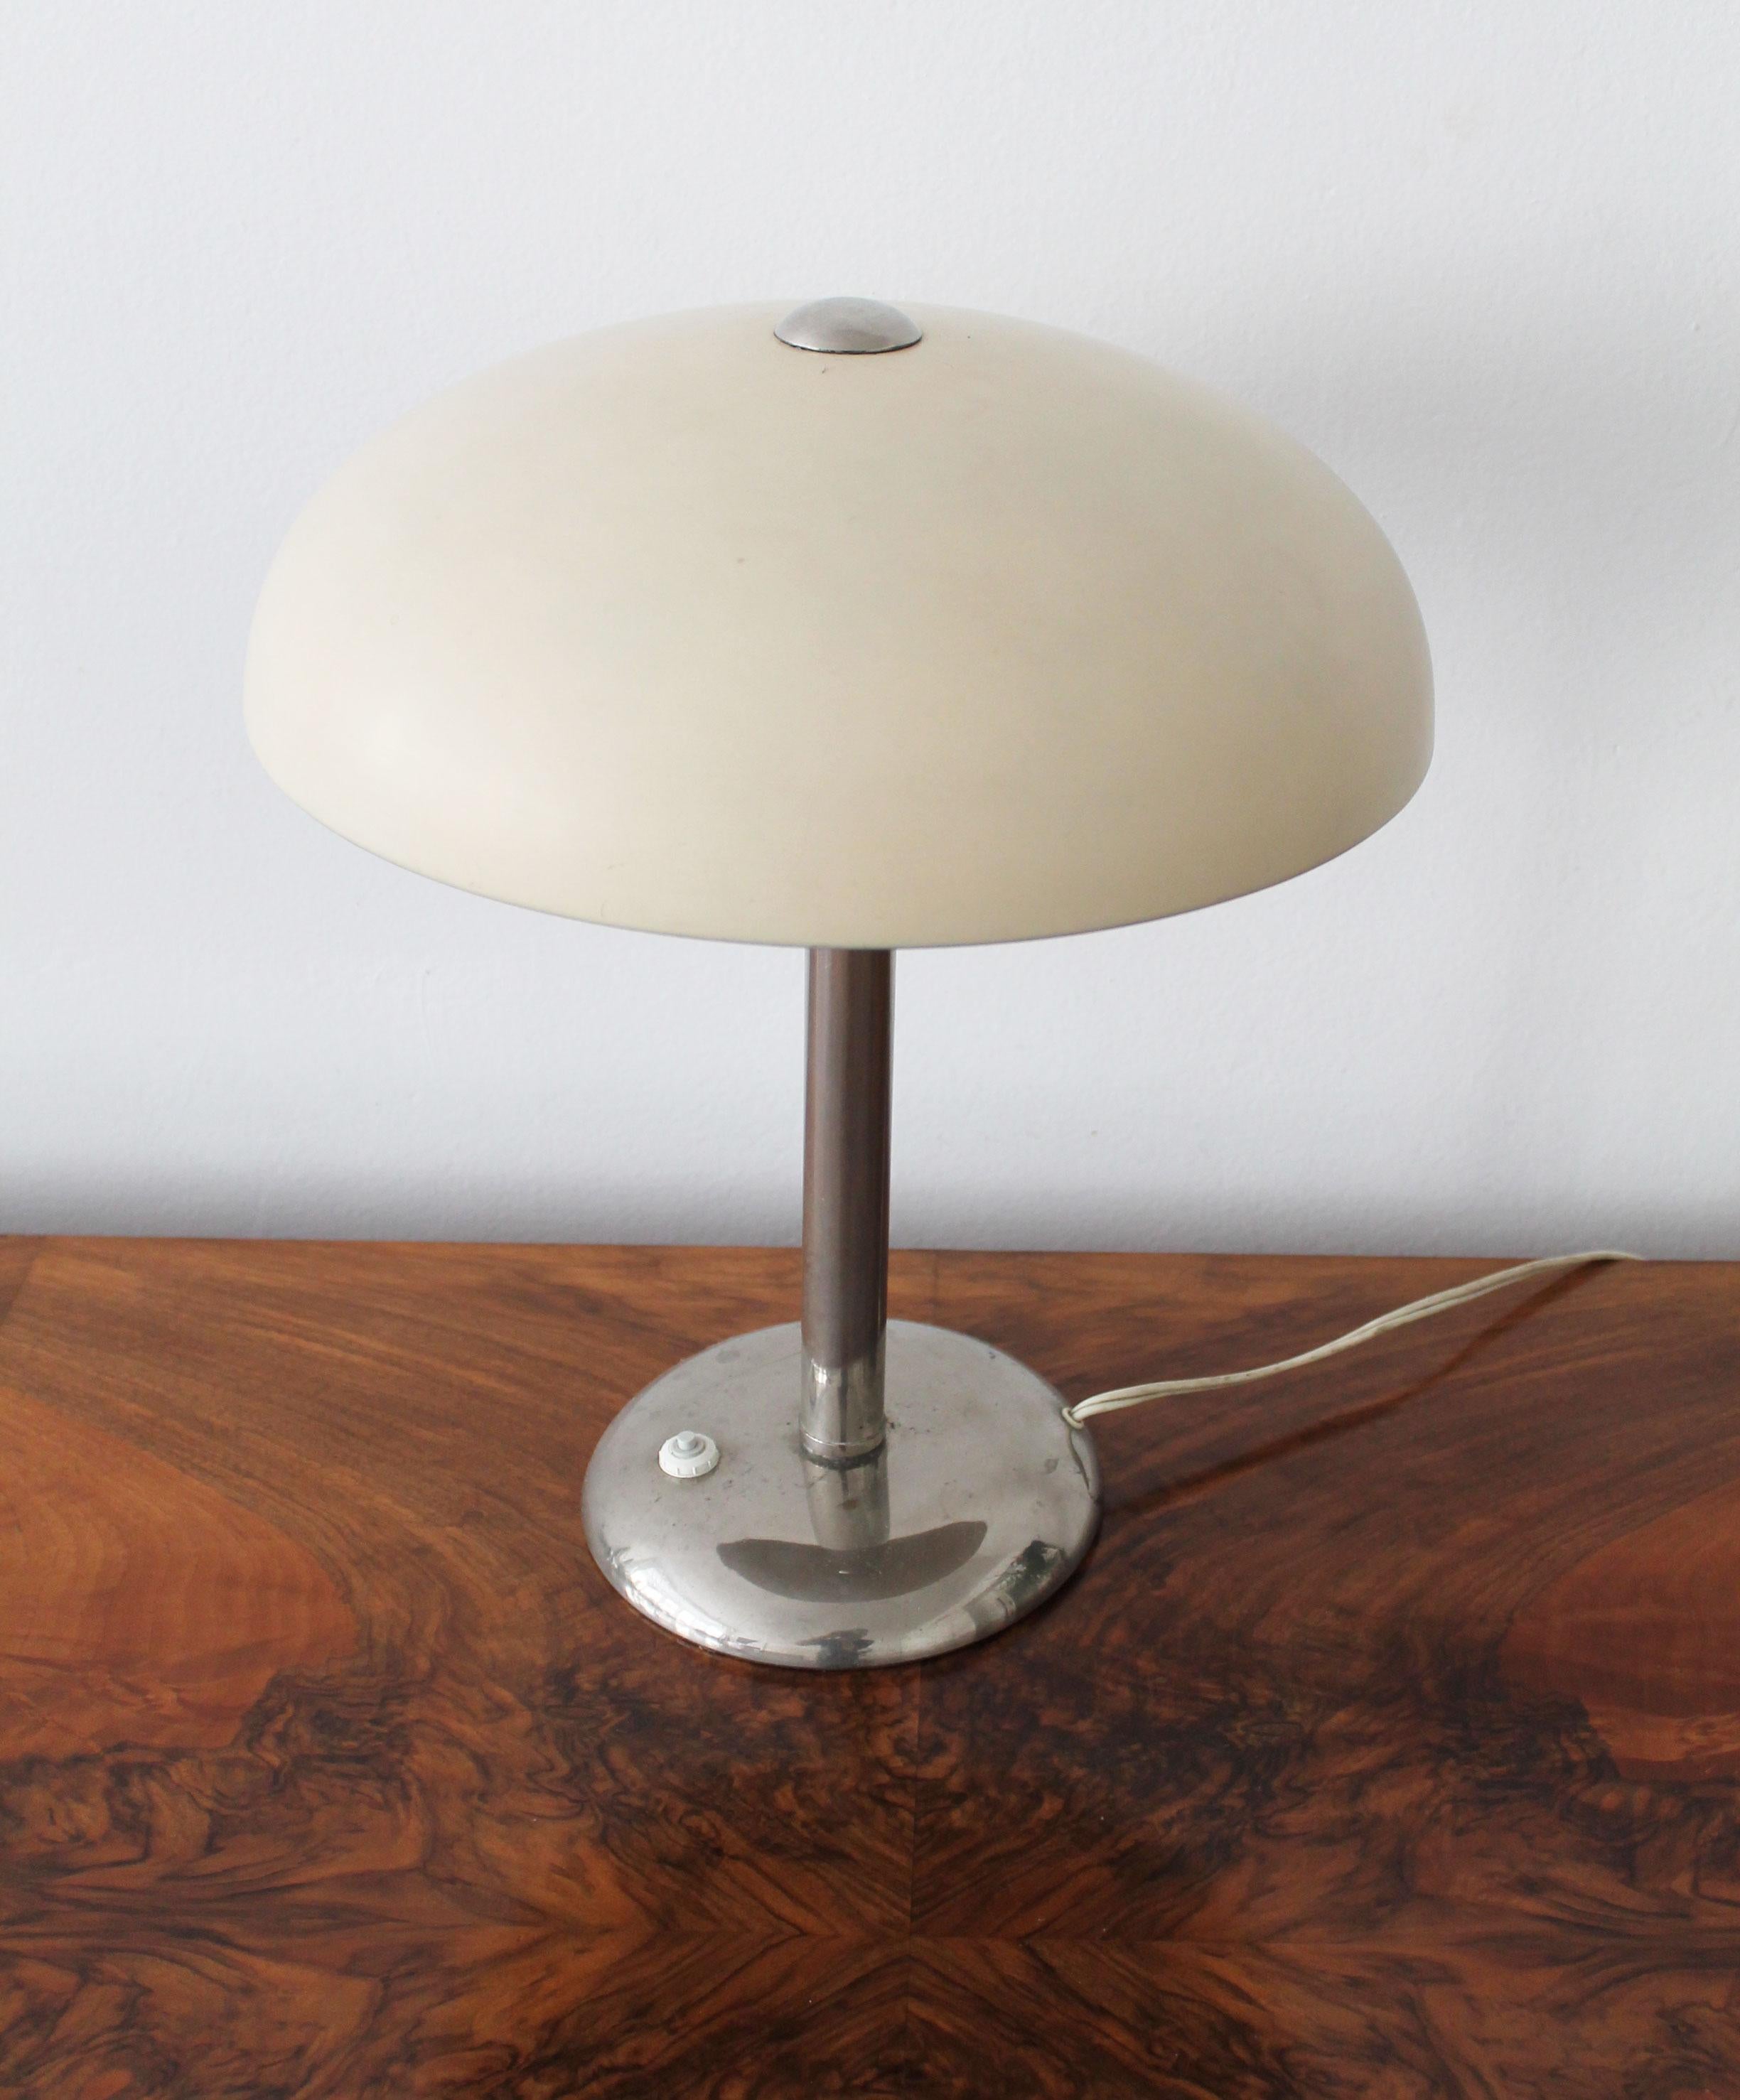 Cast 1930's Bauhaus Table Lamp For Sale